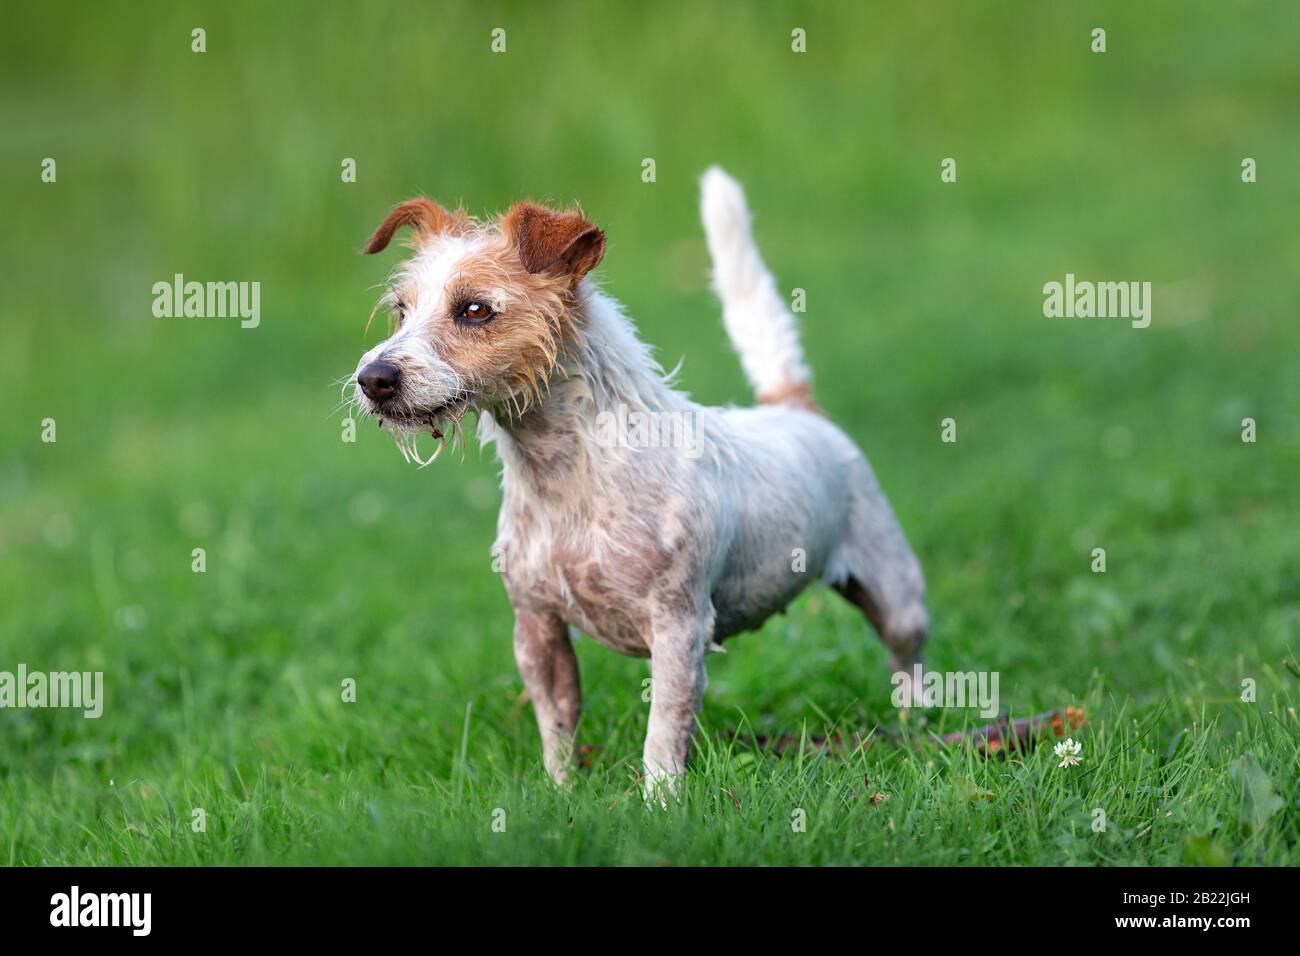 Ritratto di cric bagnato russel Terrier nel verde erba Foto Stock